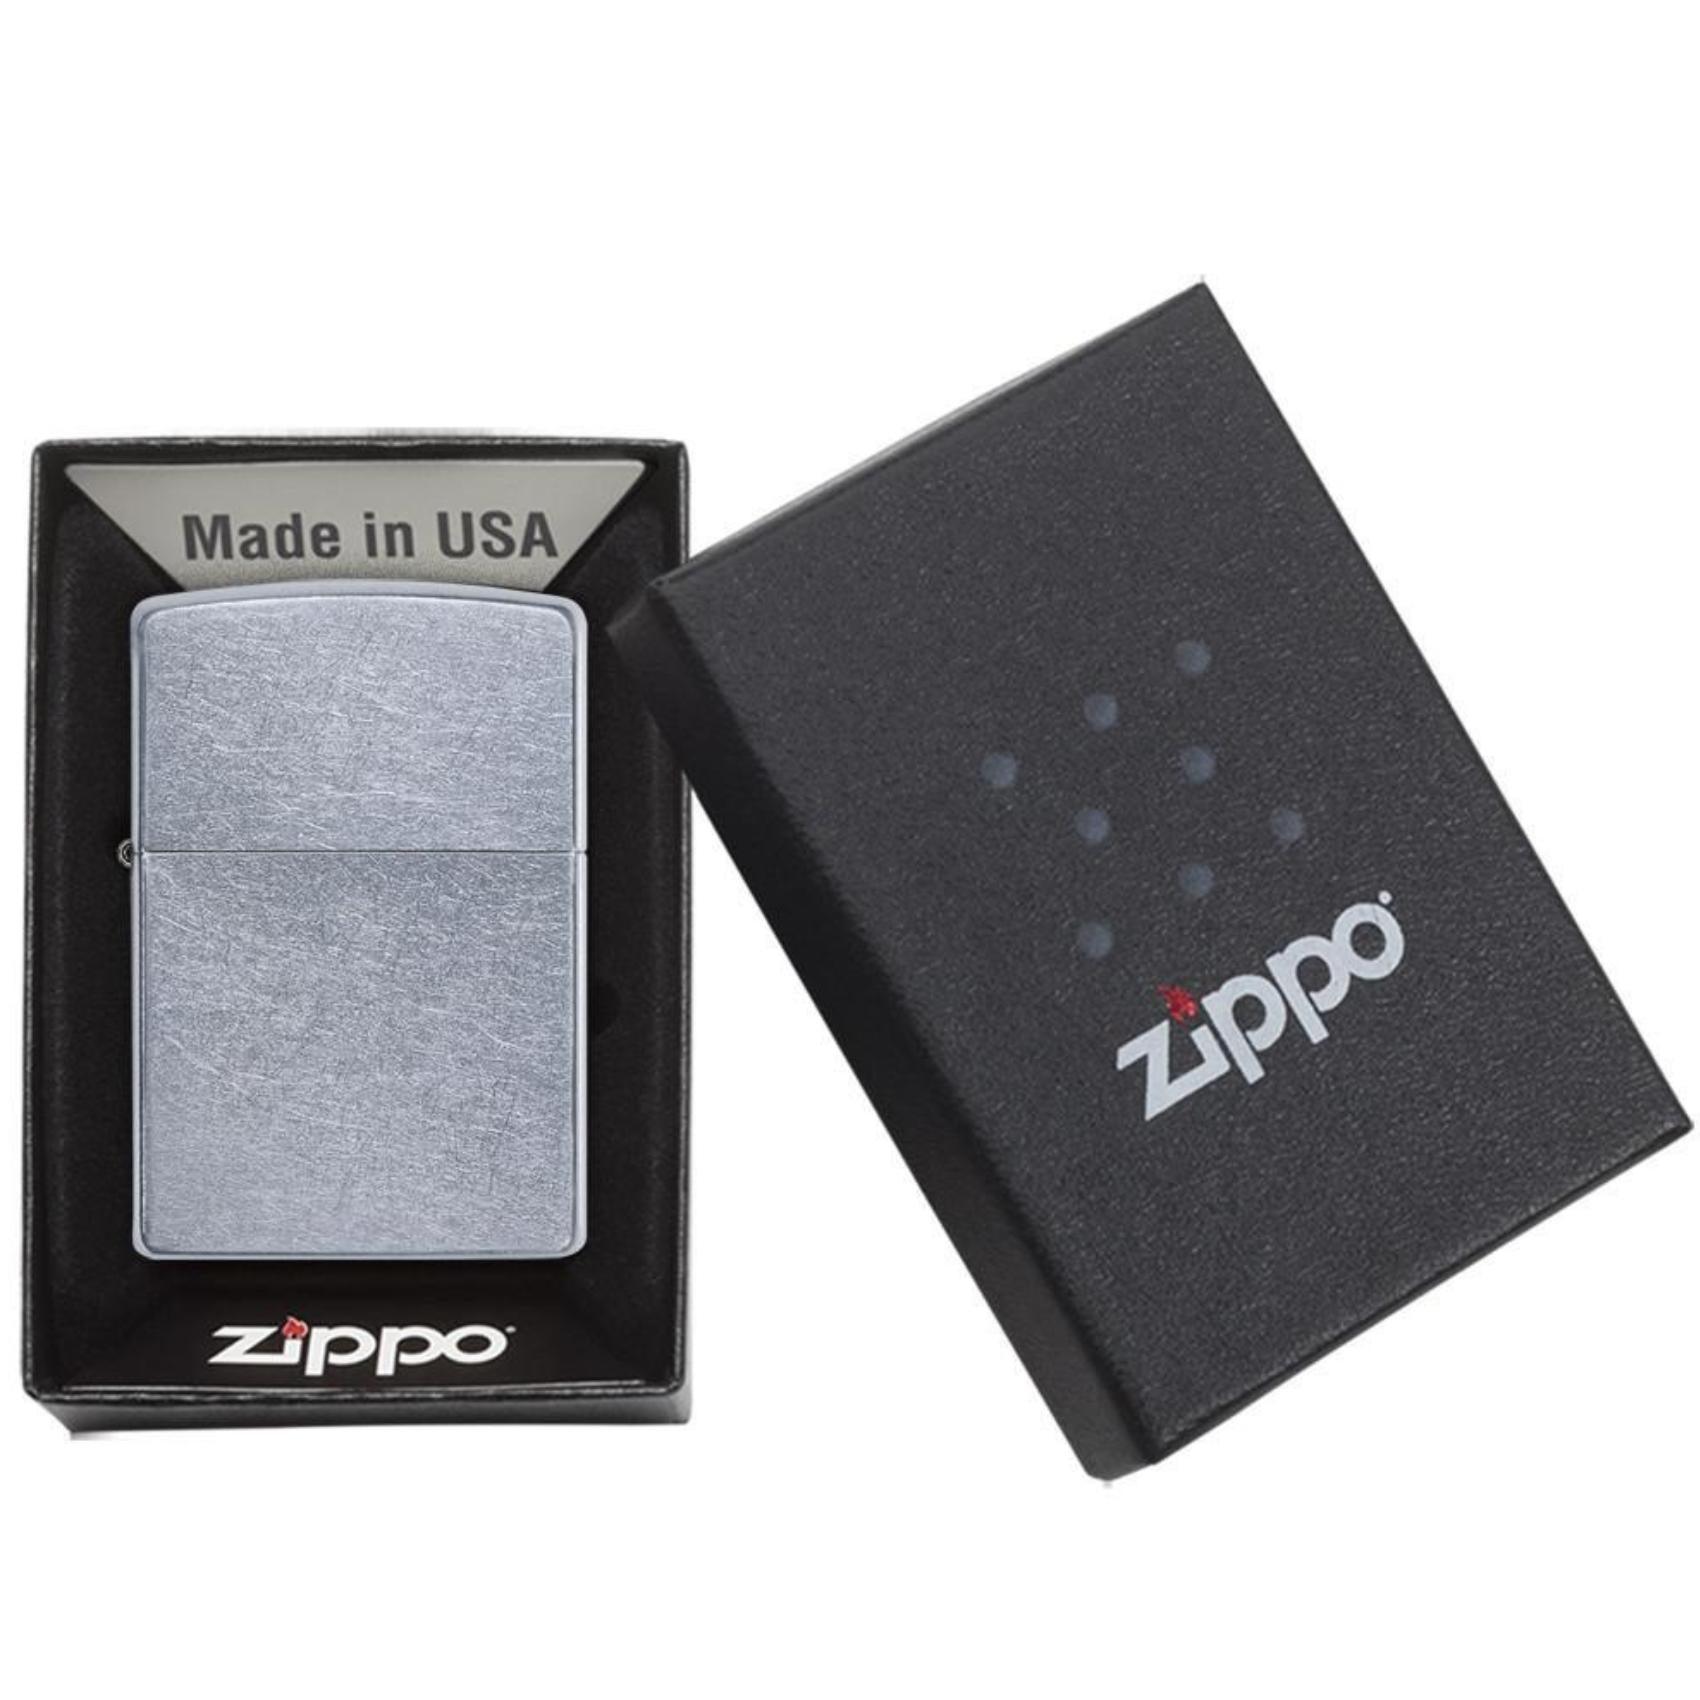 Αντιανεμικός αναπτήρας Zippo Street Chrome 207 σε ασημί χρώμα με ματ υφή και δυνατότητα χαράγματος για ένα προσωποποιημένο δώρο.